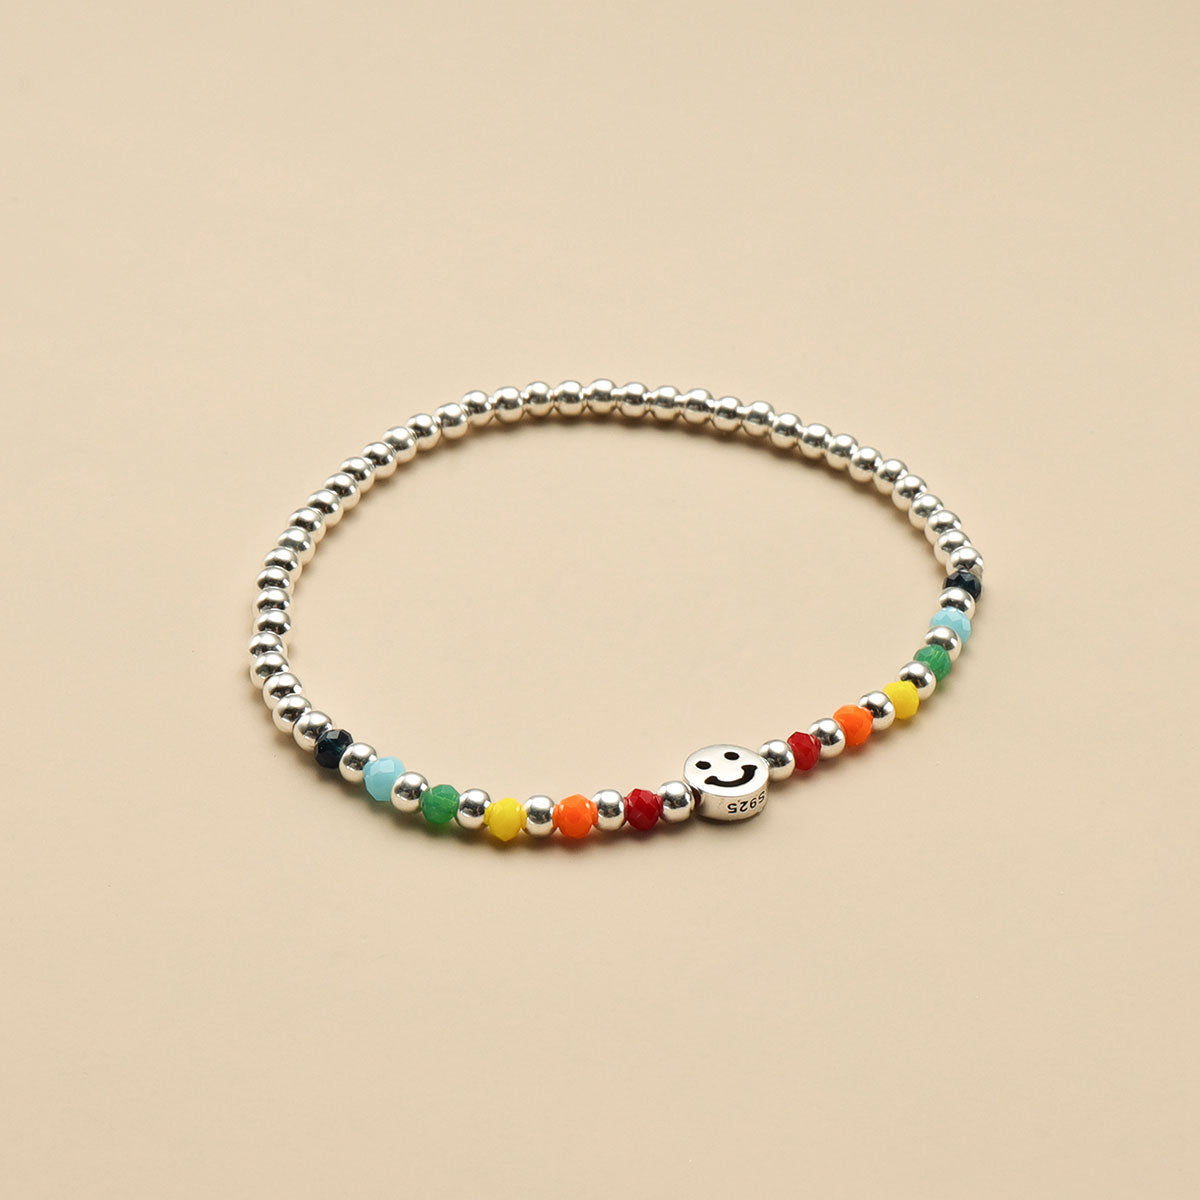 A rainbow bracelet.